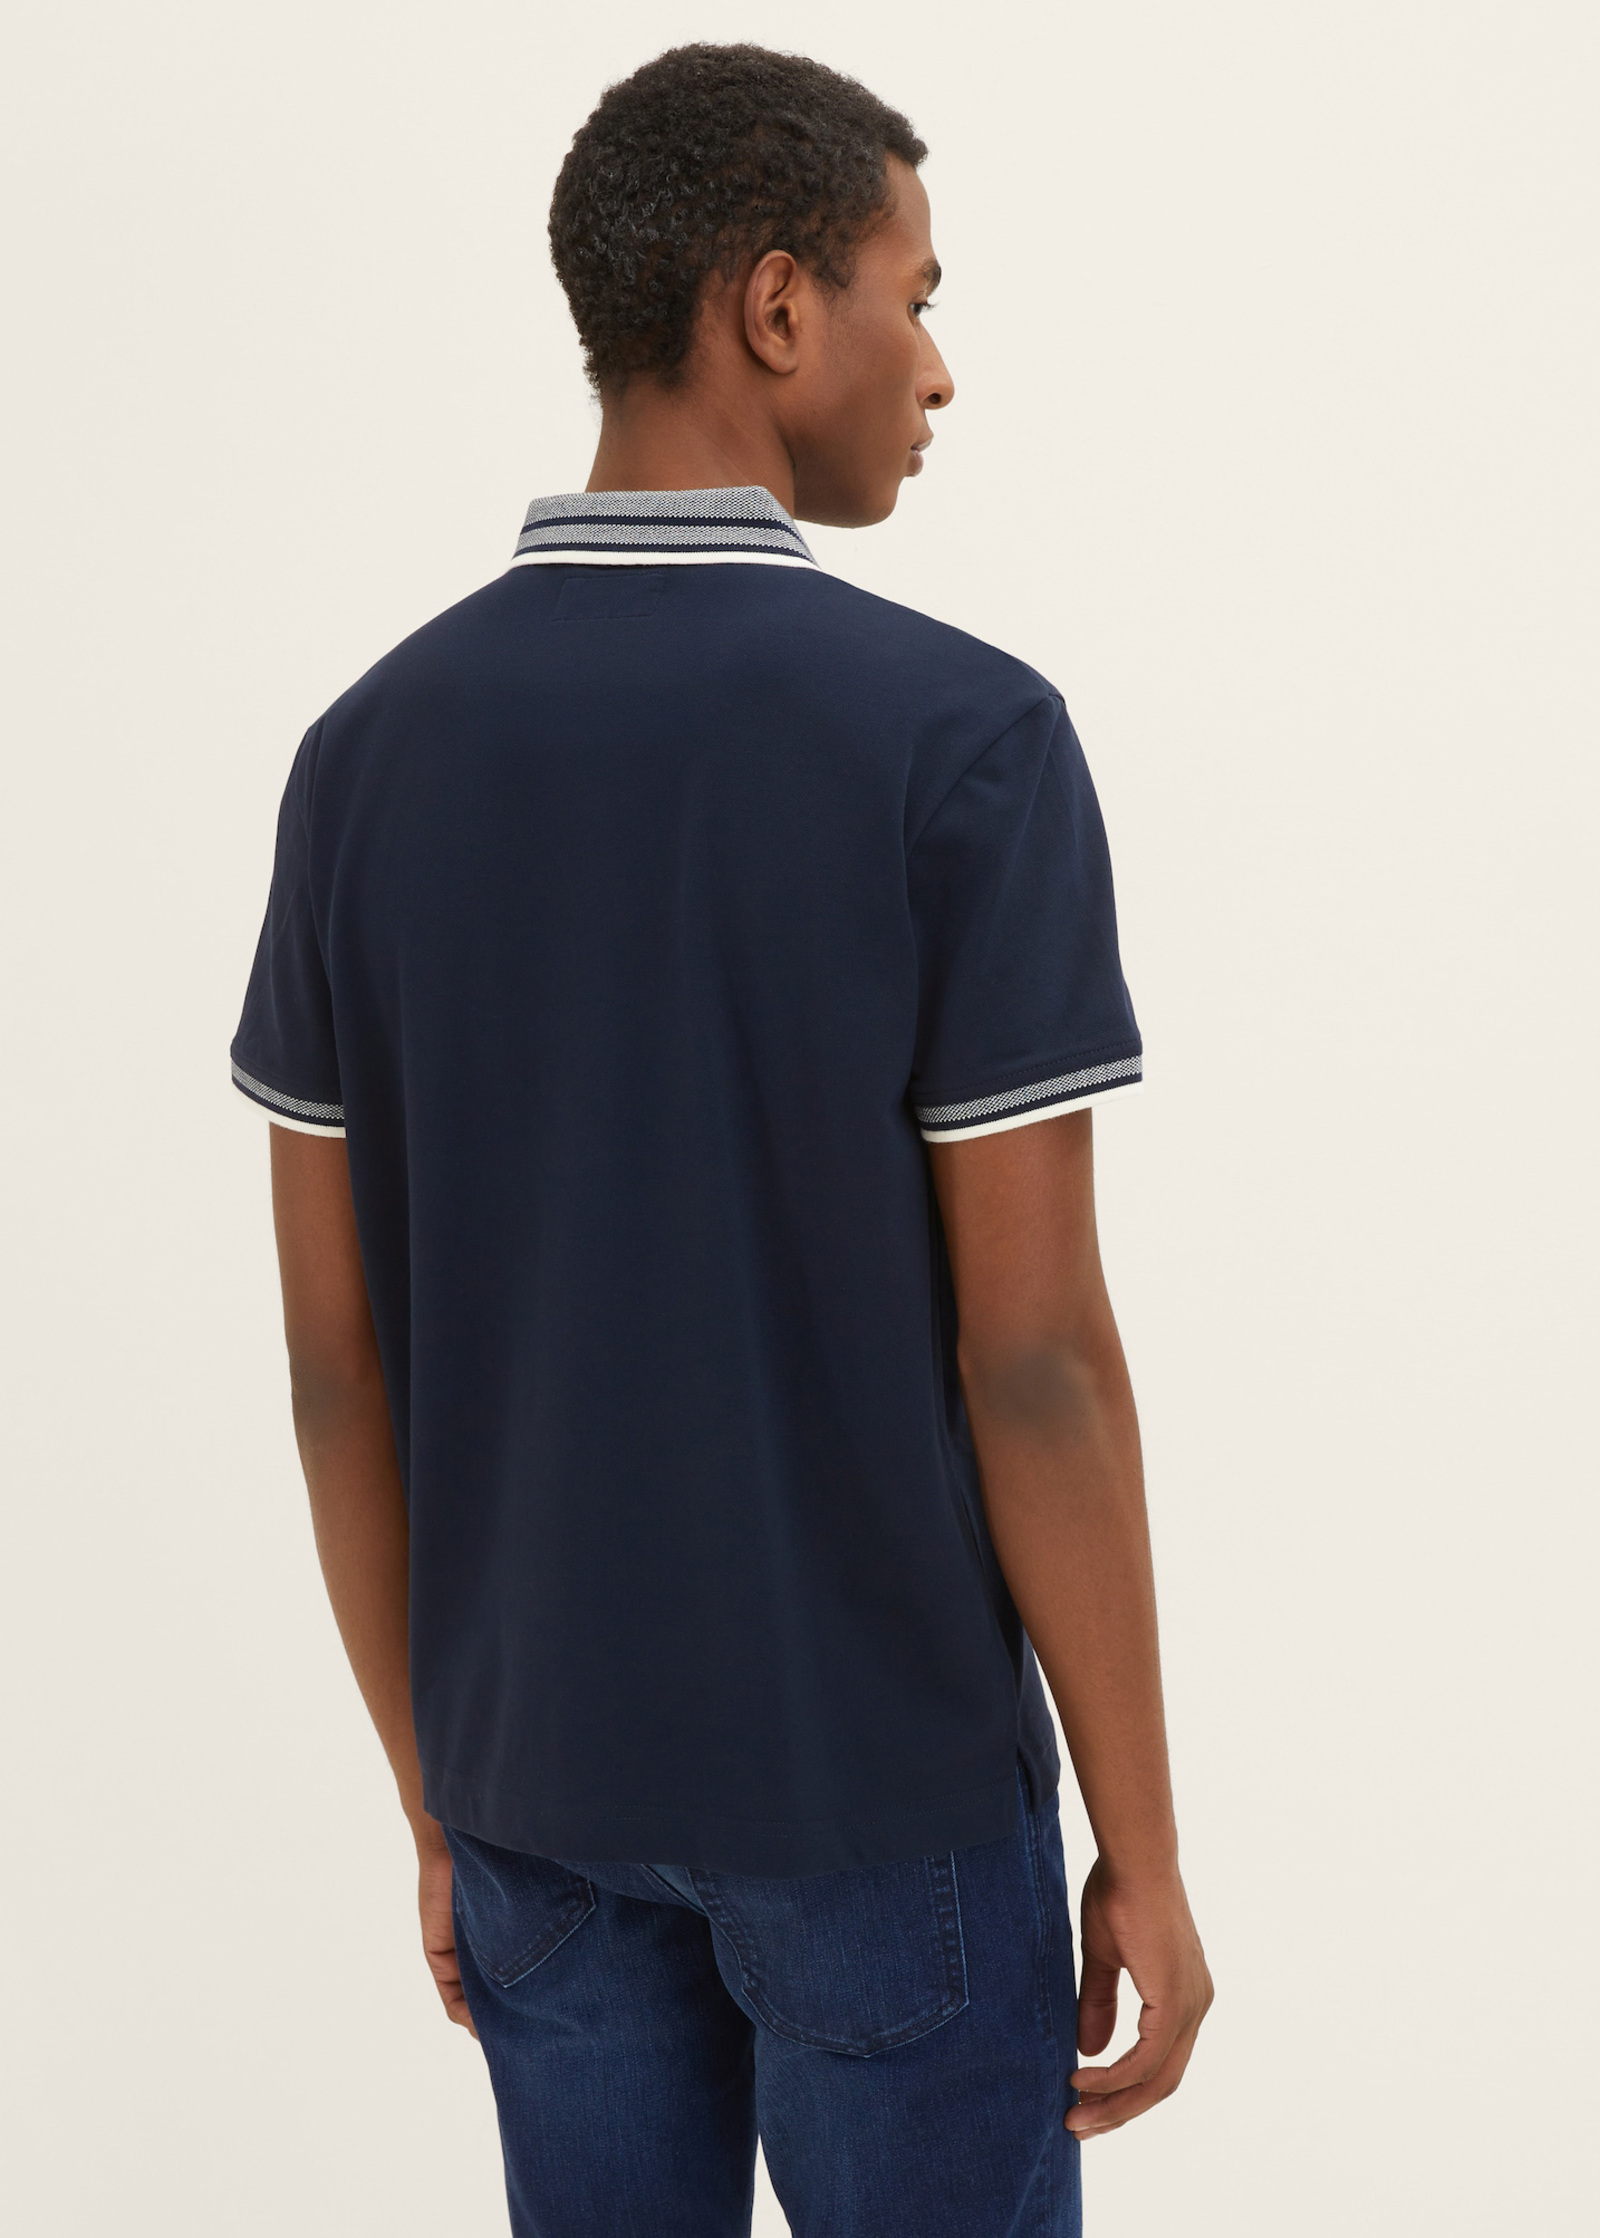 Tom Tailor® shirt Polo Sky Blue Basic Size Captain - XL